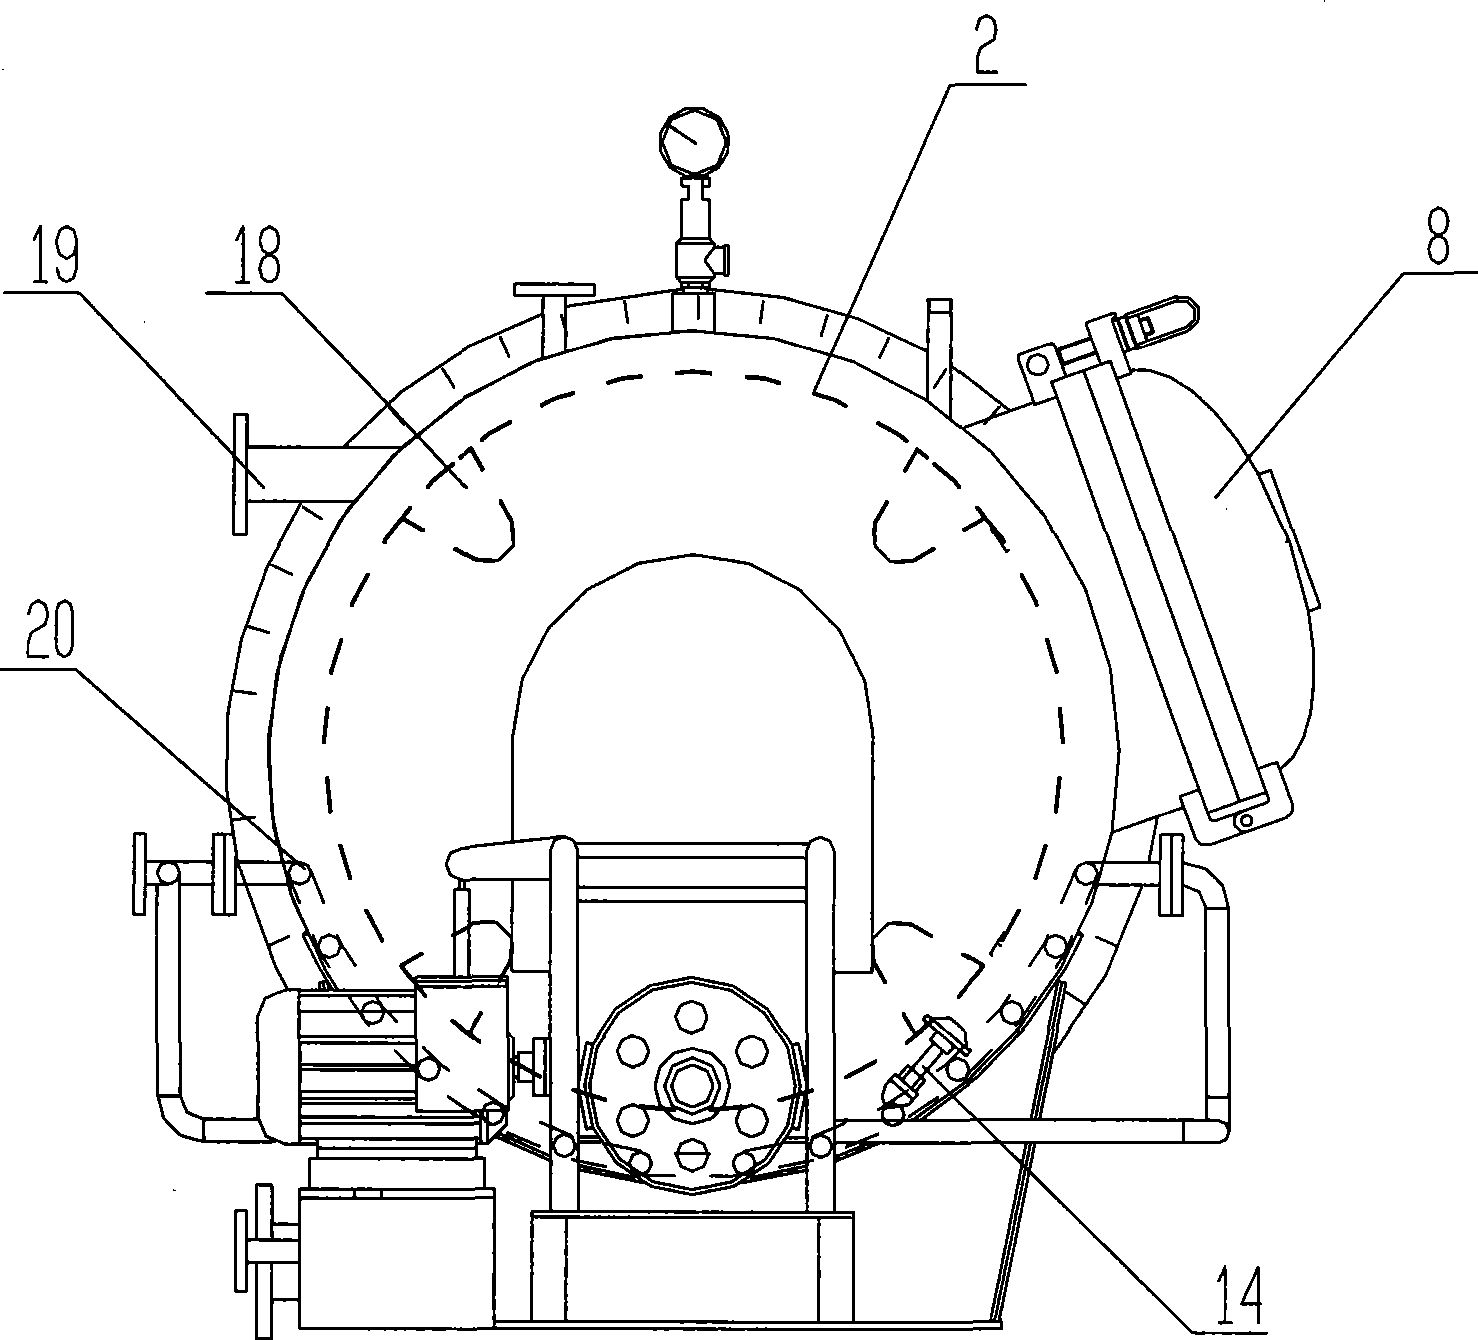 Rotary drum type dyeing machine